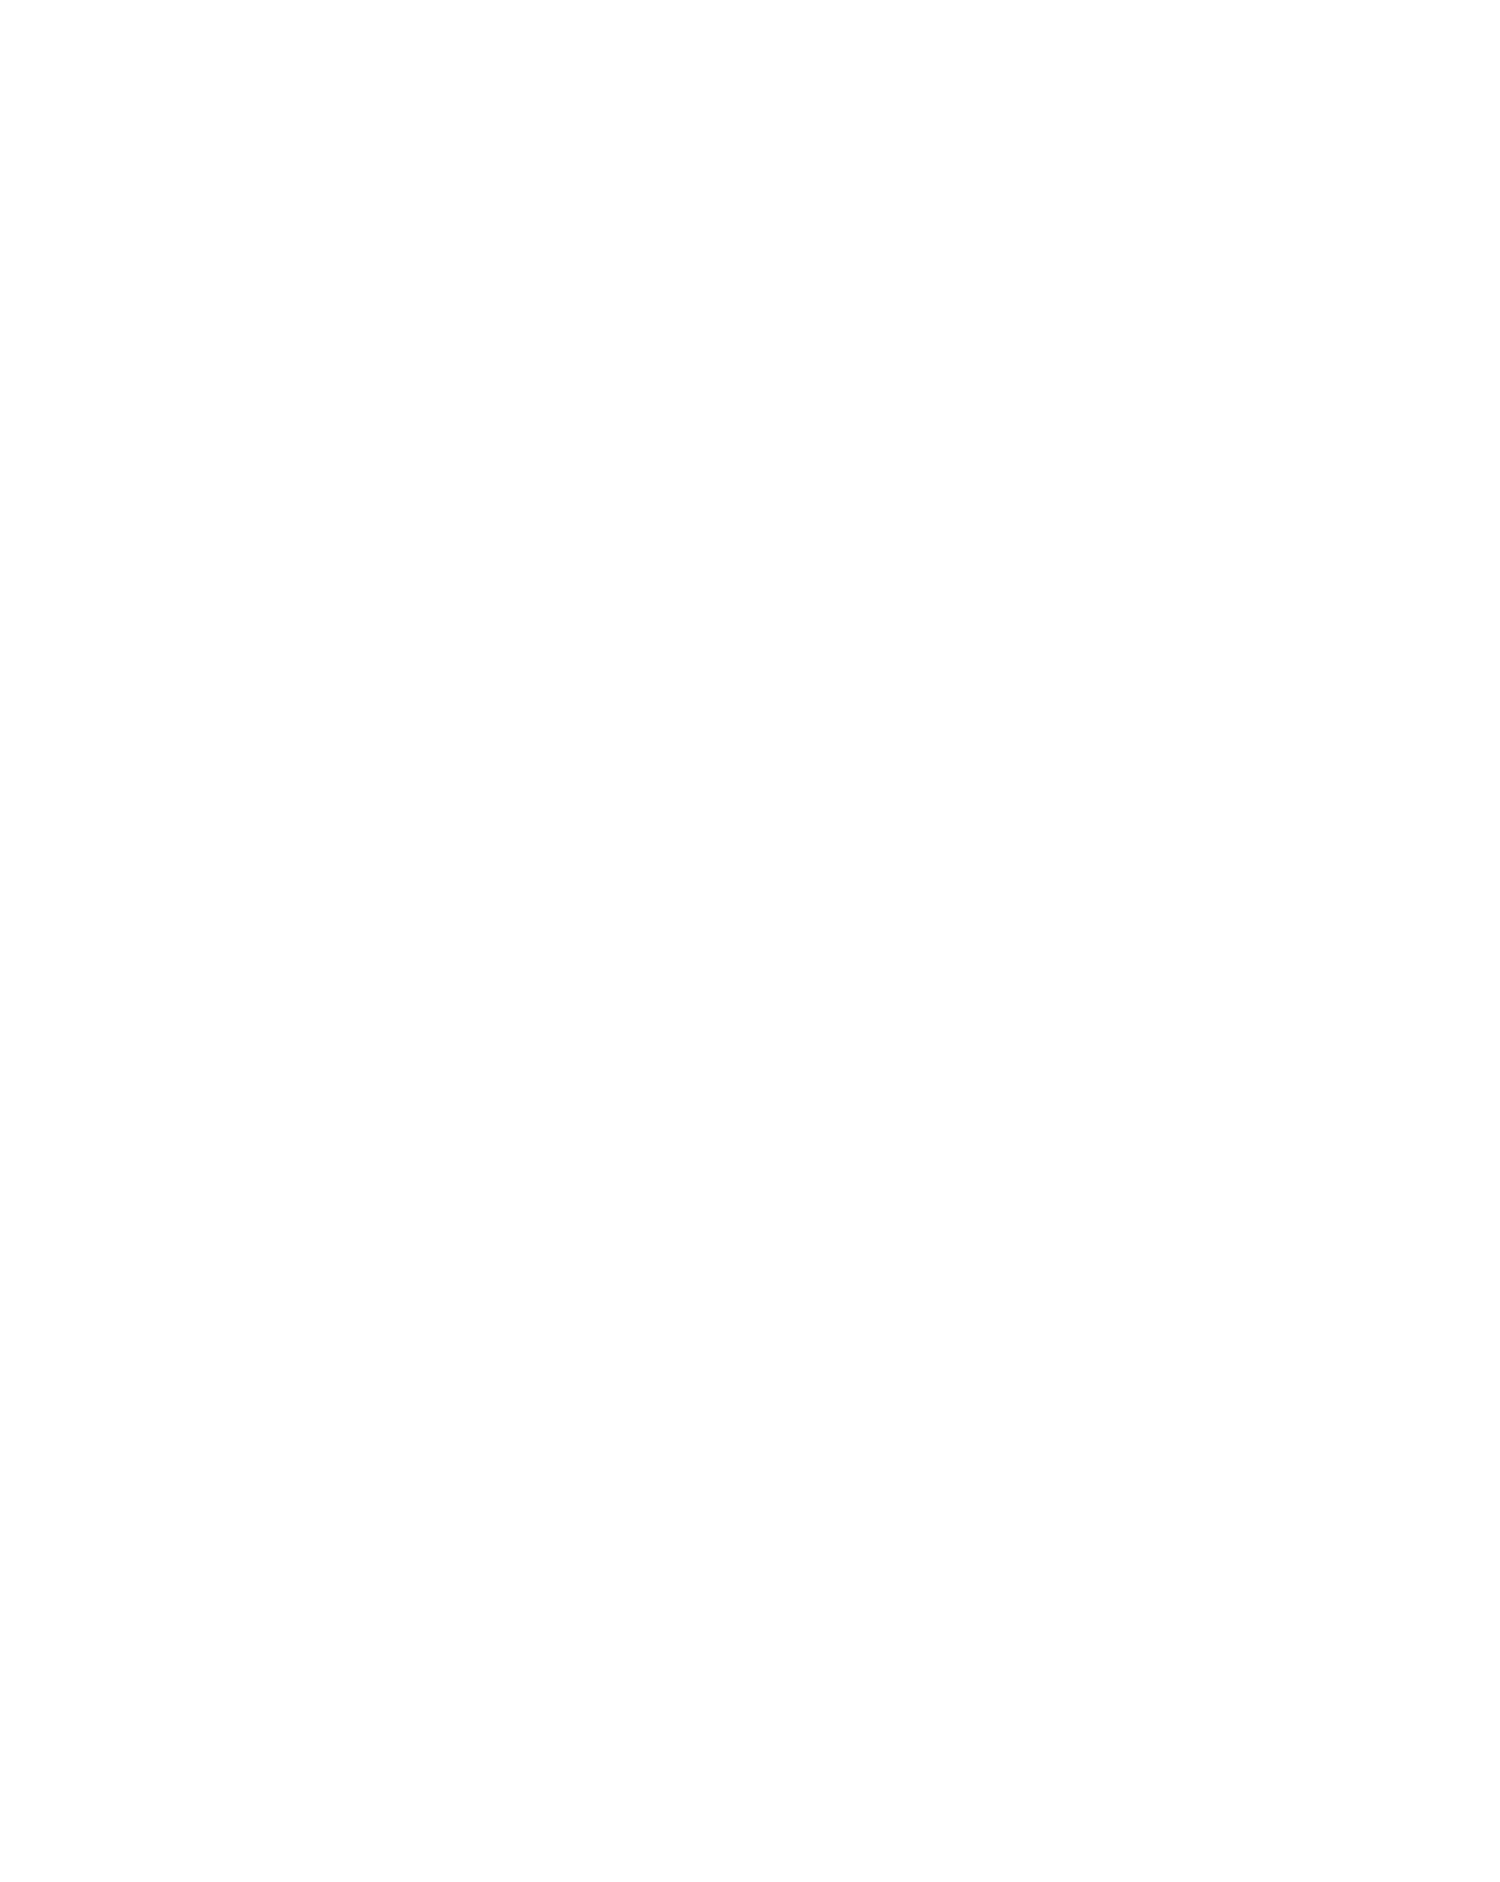 yogakat Fitness